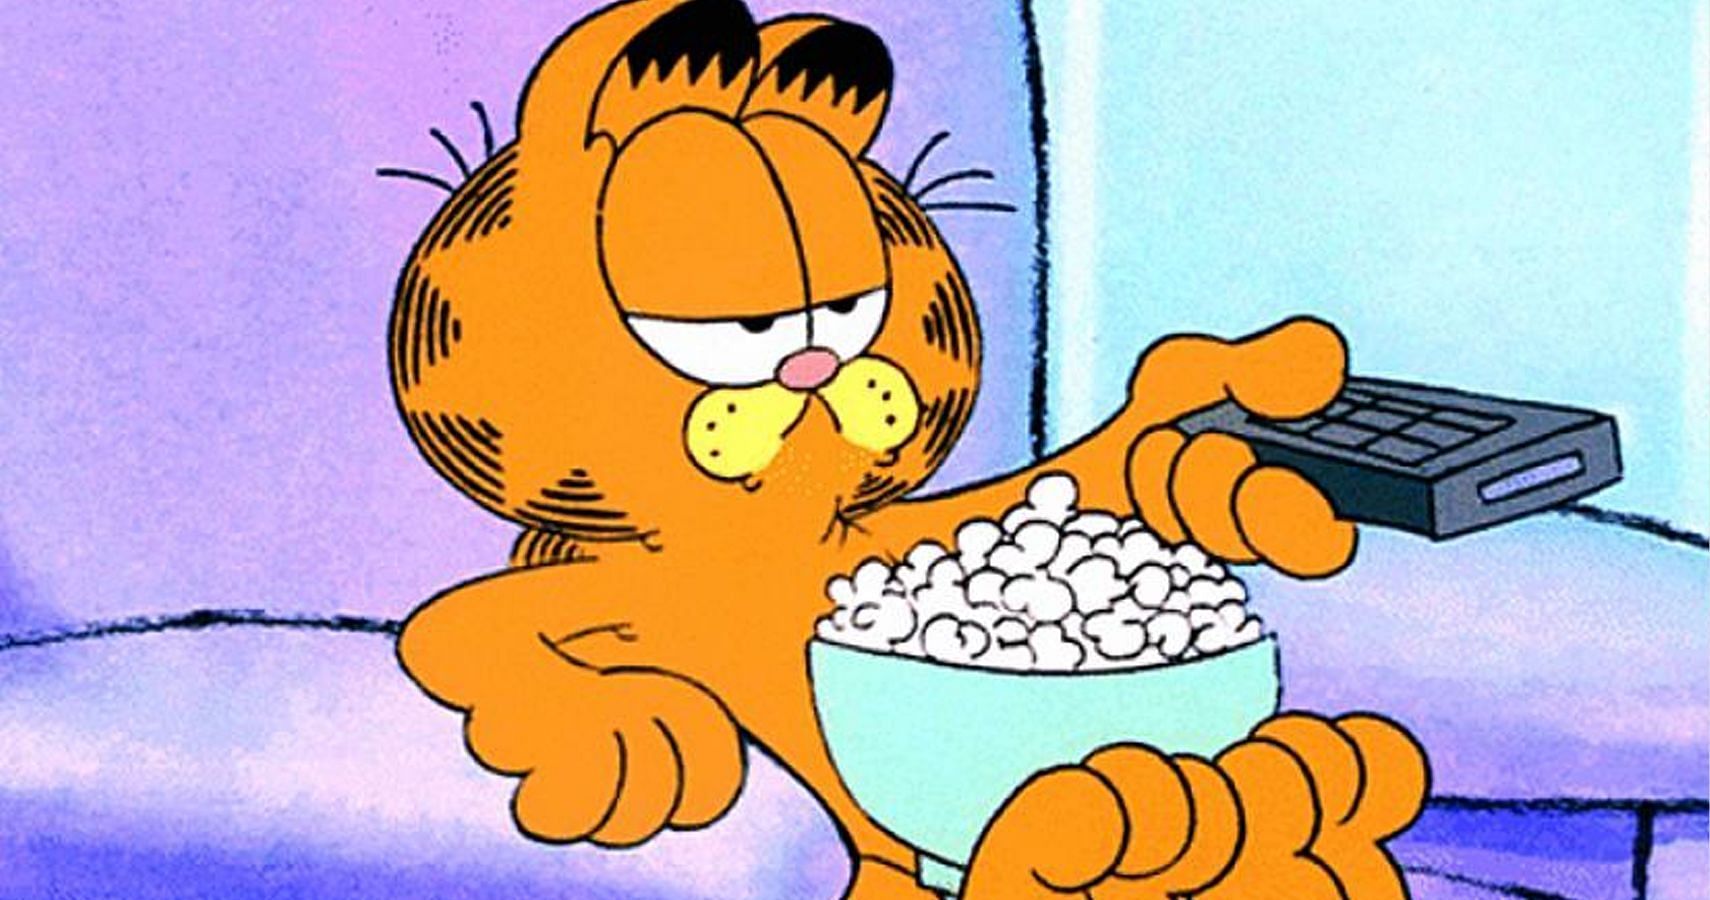 Garfield from the comics (Image via Nickelodeon)